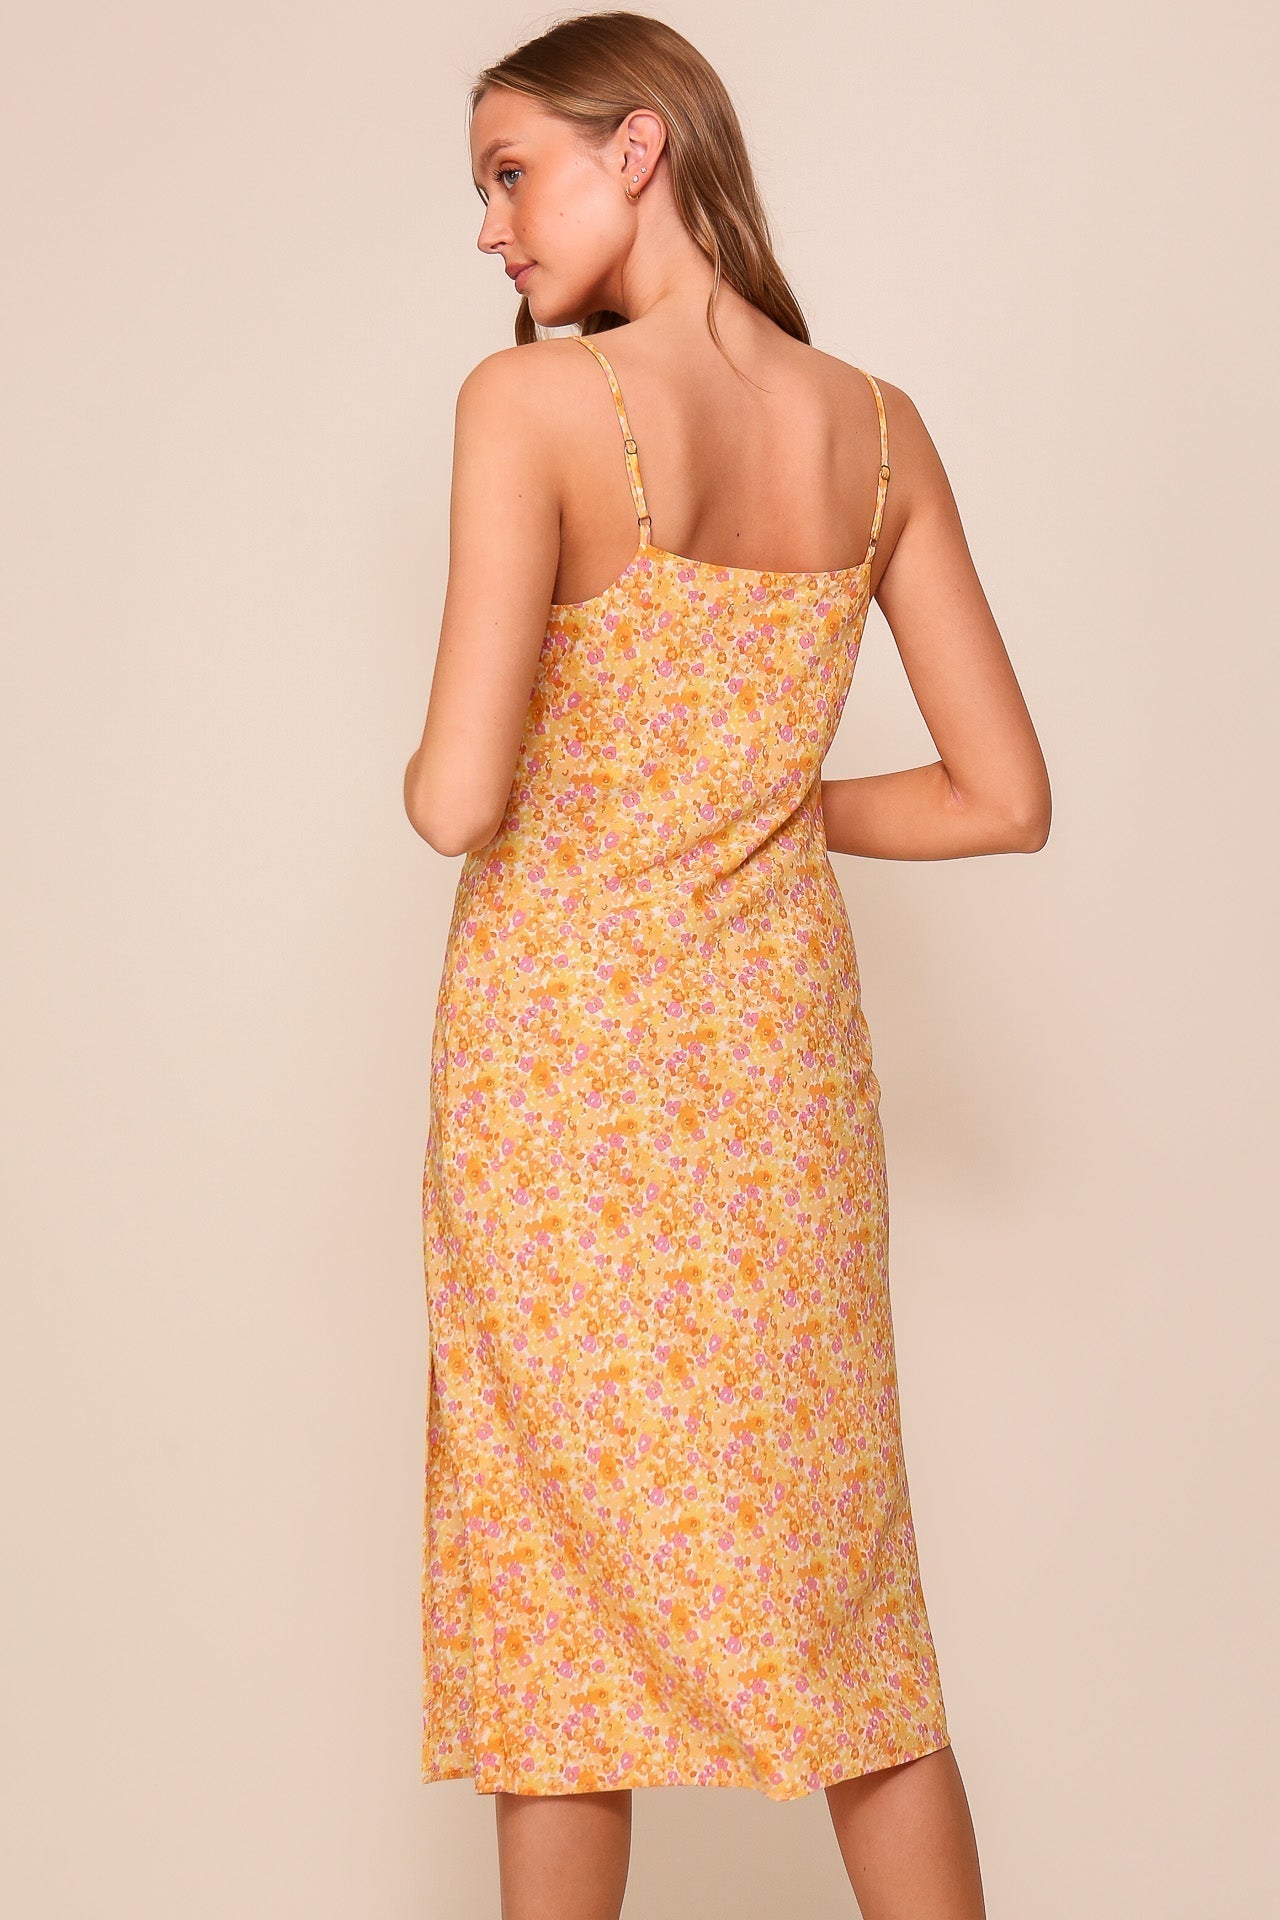 Back view of Timing (WD8575Z) Women's Adjustable Strap Cowl Neck Midi Slip Dress in Orange Ditsy Floral Print